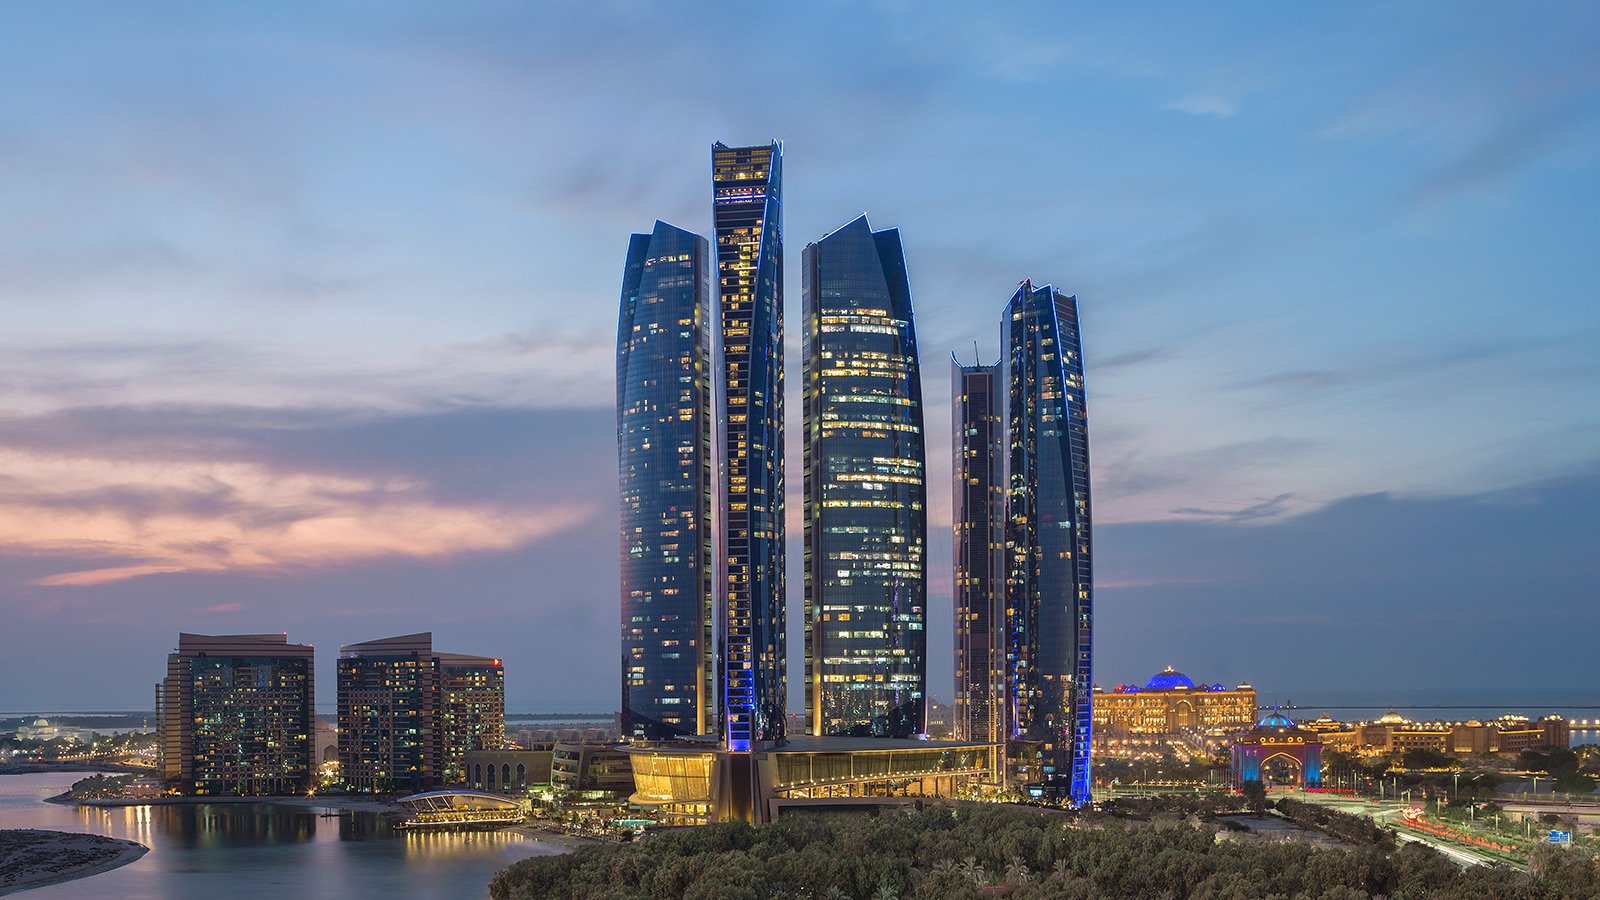 Vue crépusculaire de la célèbre ligne d'horizon urbaine d'Abu Dhabi, composée de gratte-ciel et de structures bâties.